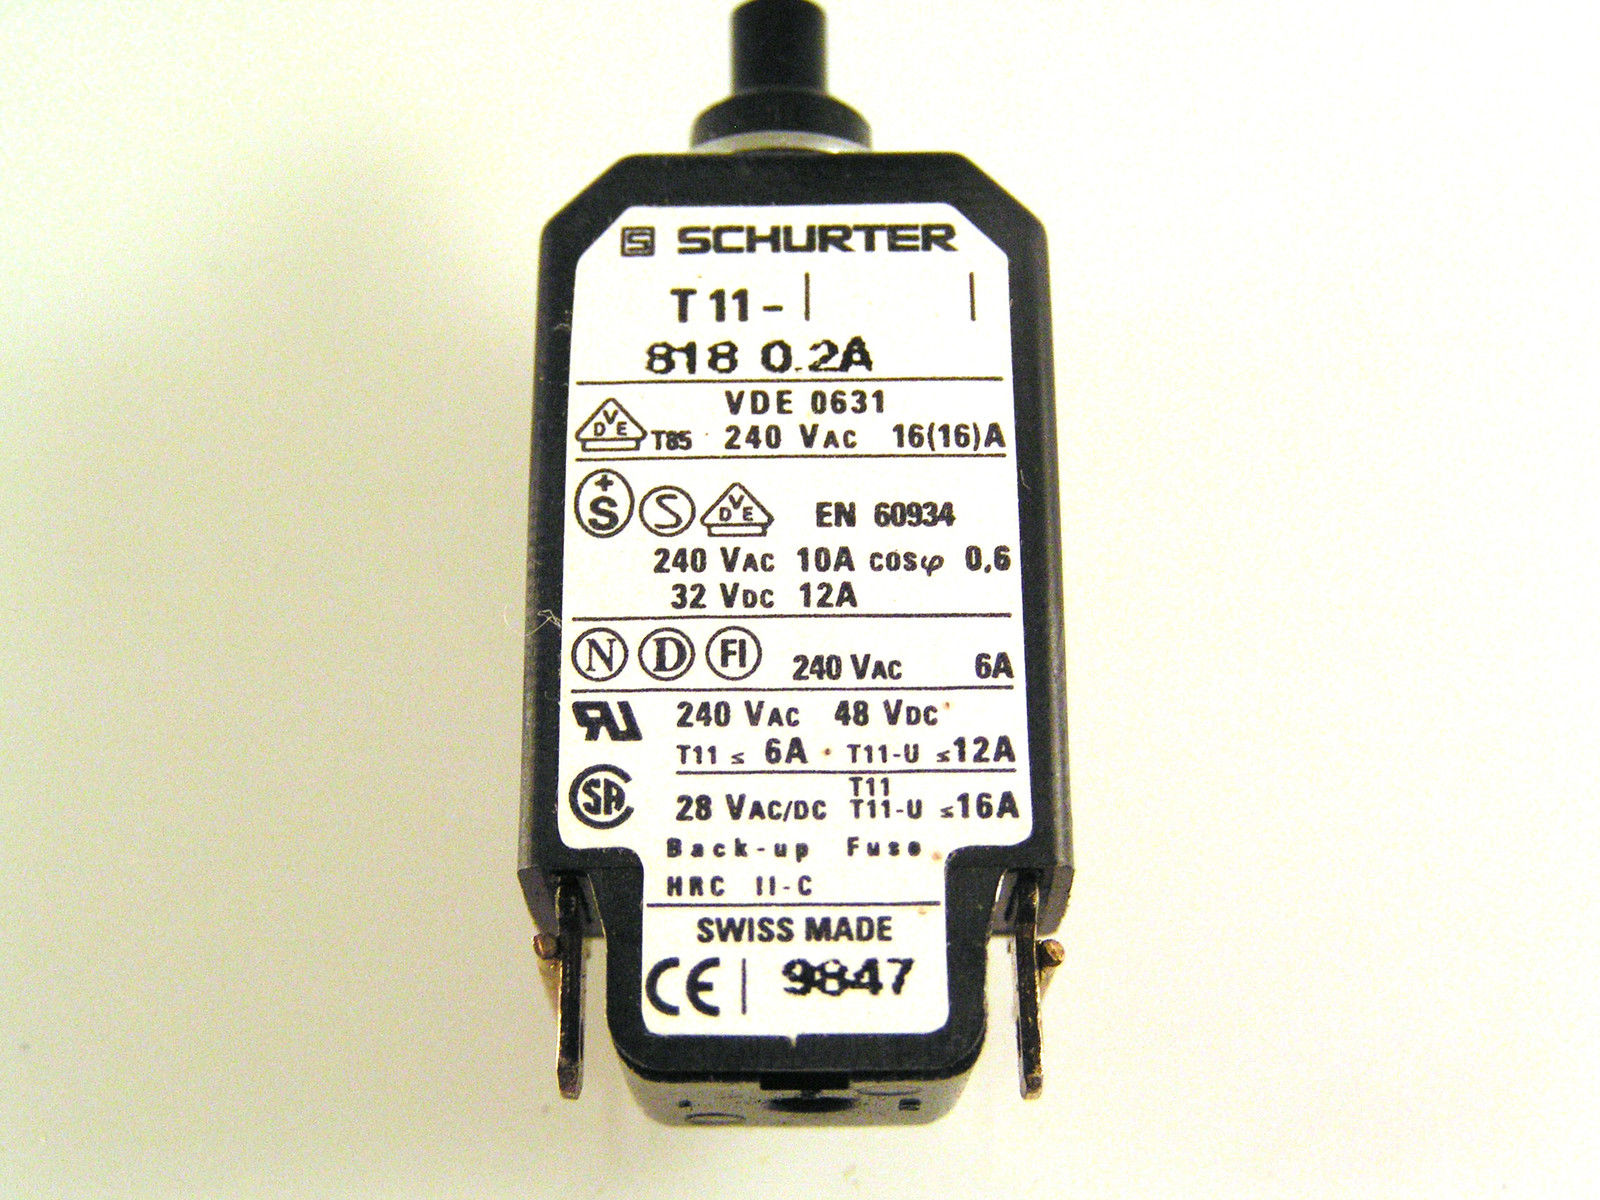 Schurter T11-818 0.2A Thermal Circuit Breaker 240VAC 10A 32VDC 12A OM0572A